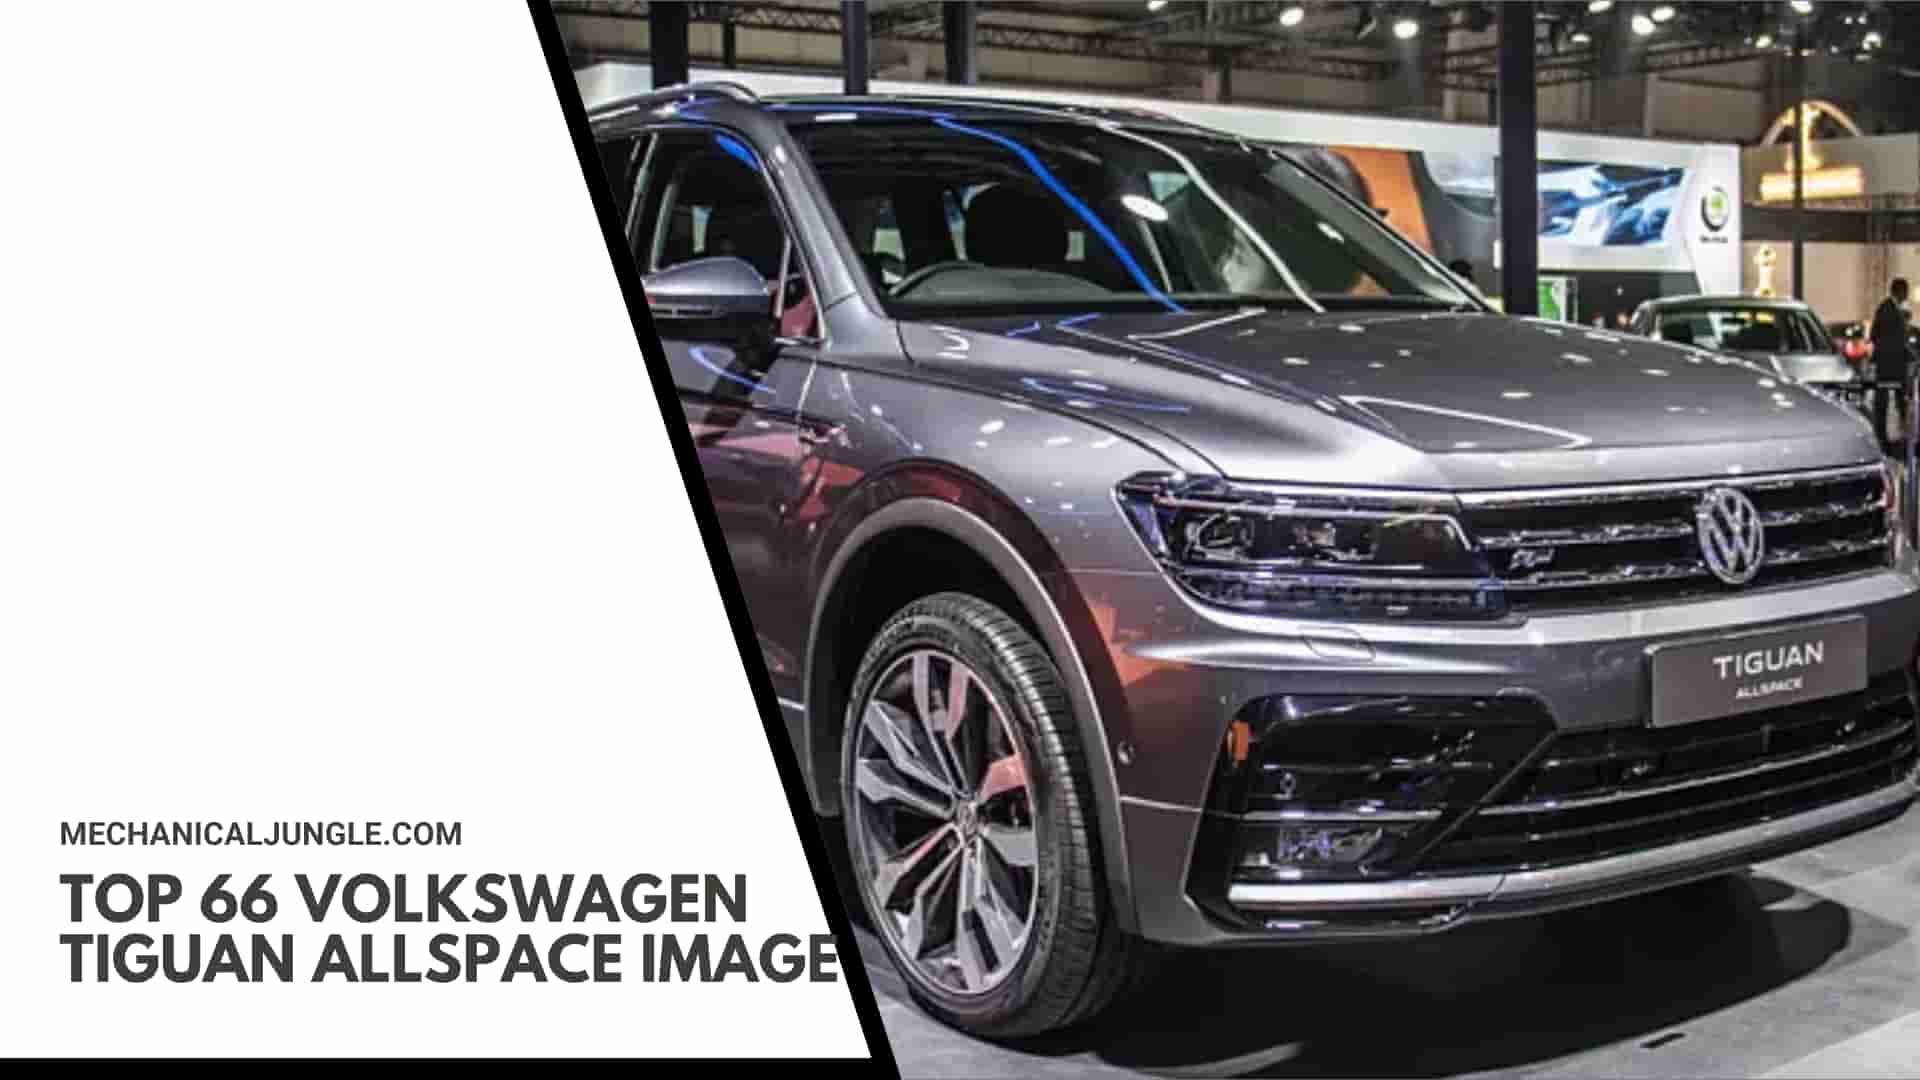 Top 66 Volkswagen Tiguan Allspace Image